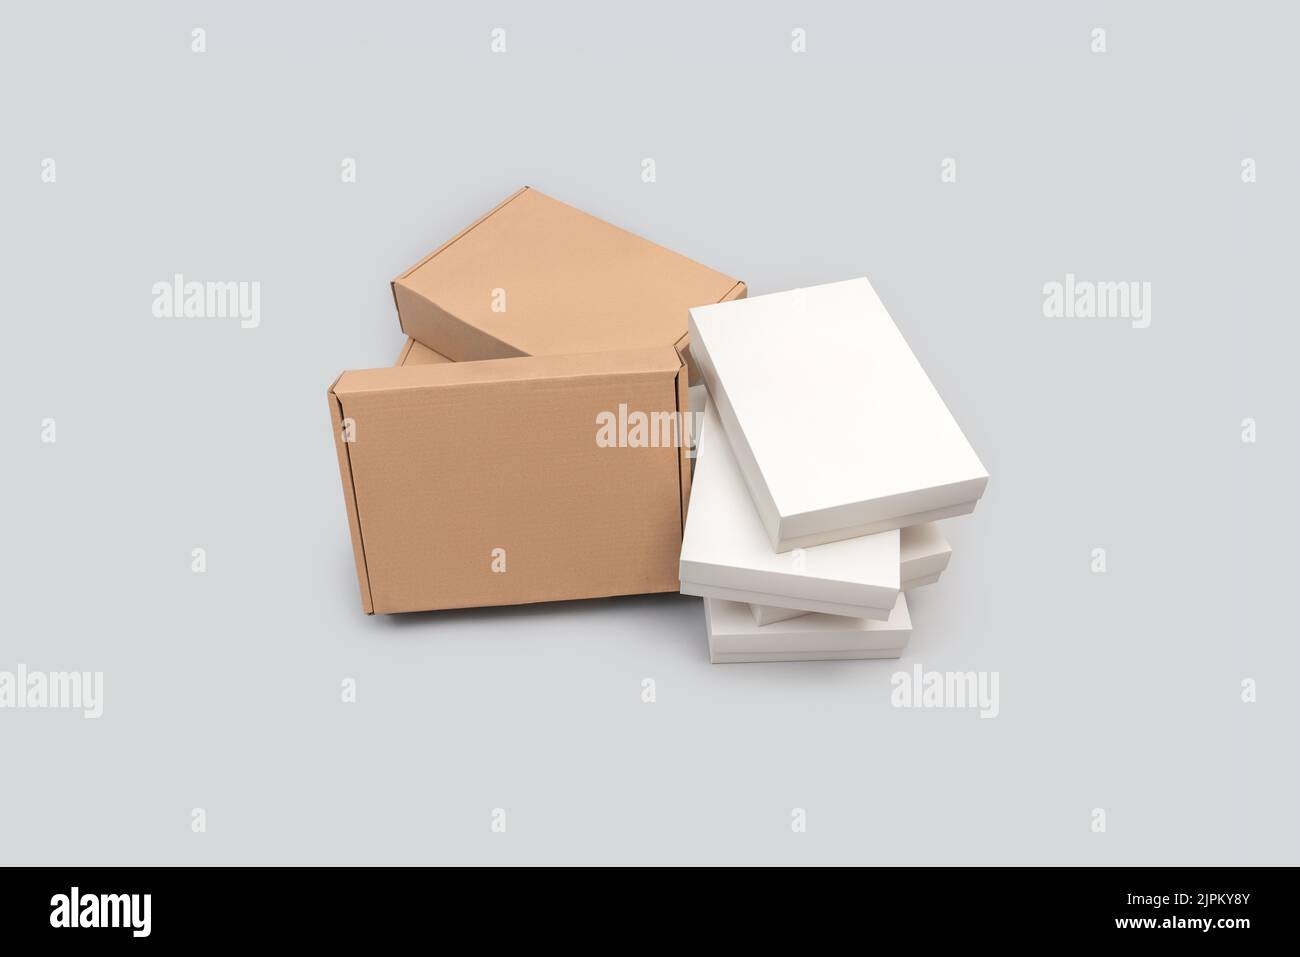 Gruppo di scatole di cartone di colore bianco e marrone isolate su sfondo bianco. Concetto di e-commerce e packing Foto Stock